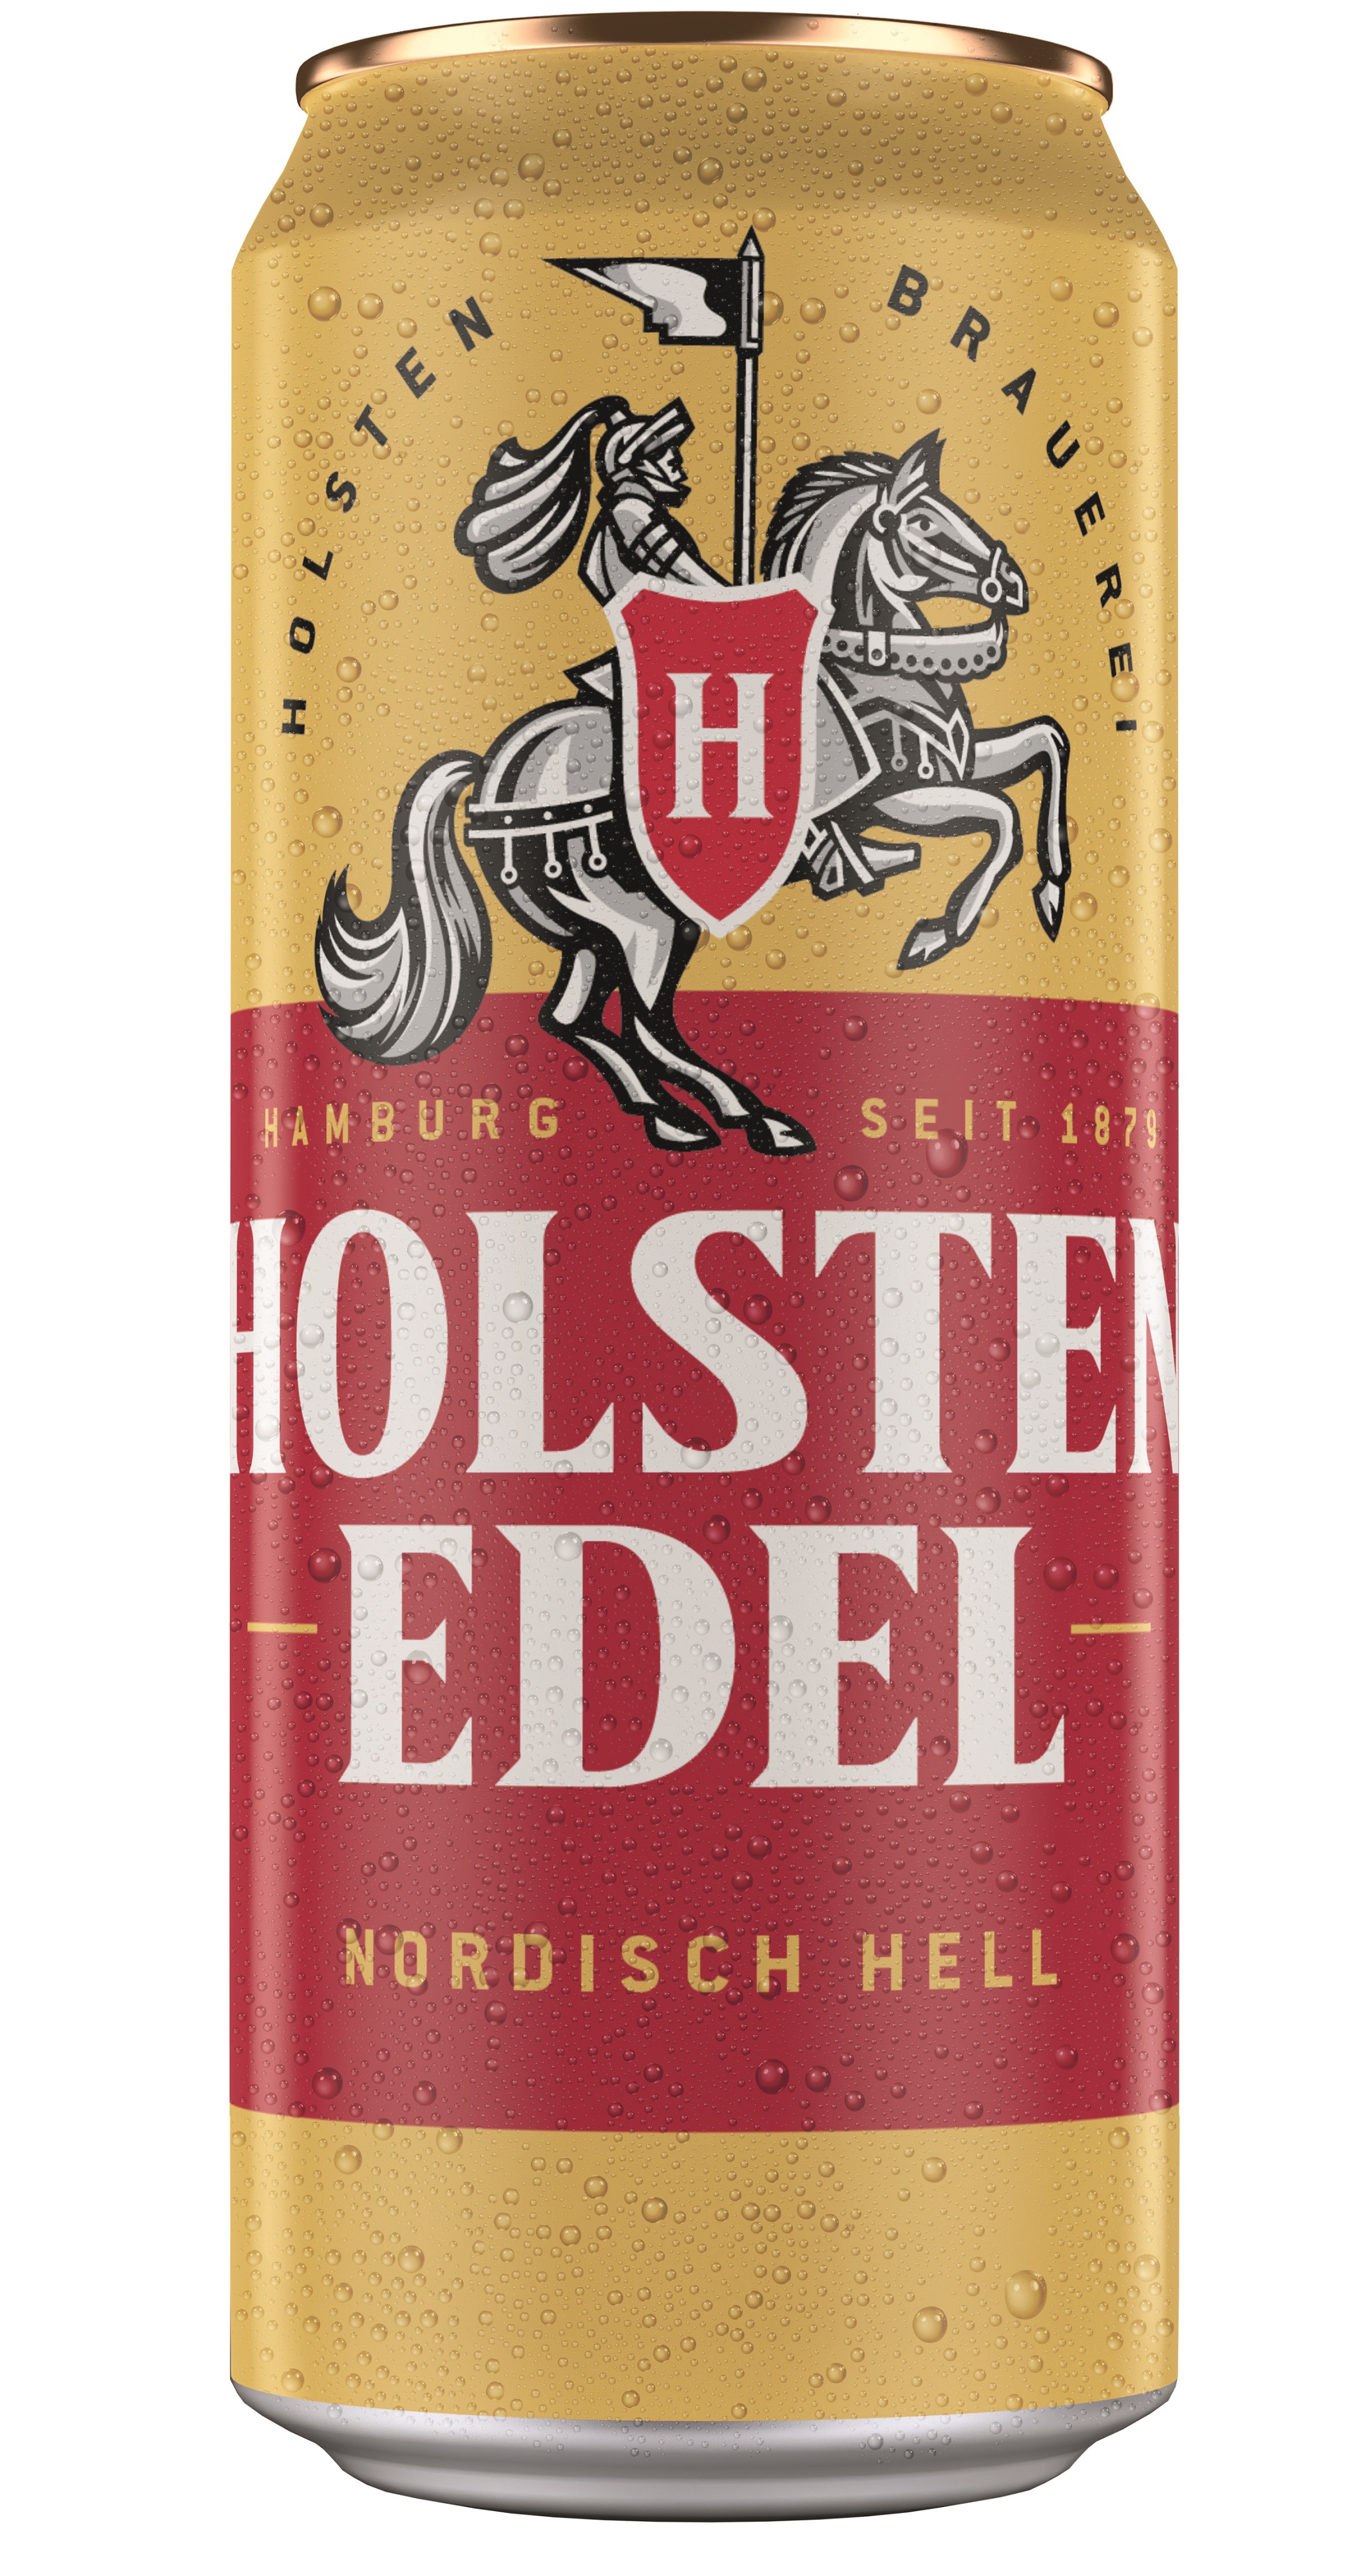 Frontalansicht von Holsten EDEL Bier in der Dose 